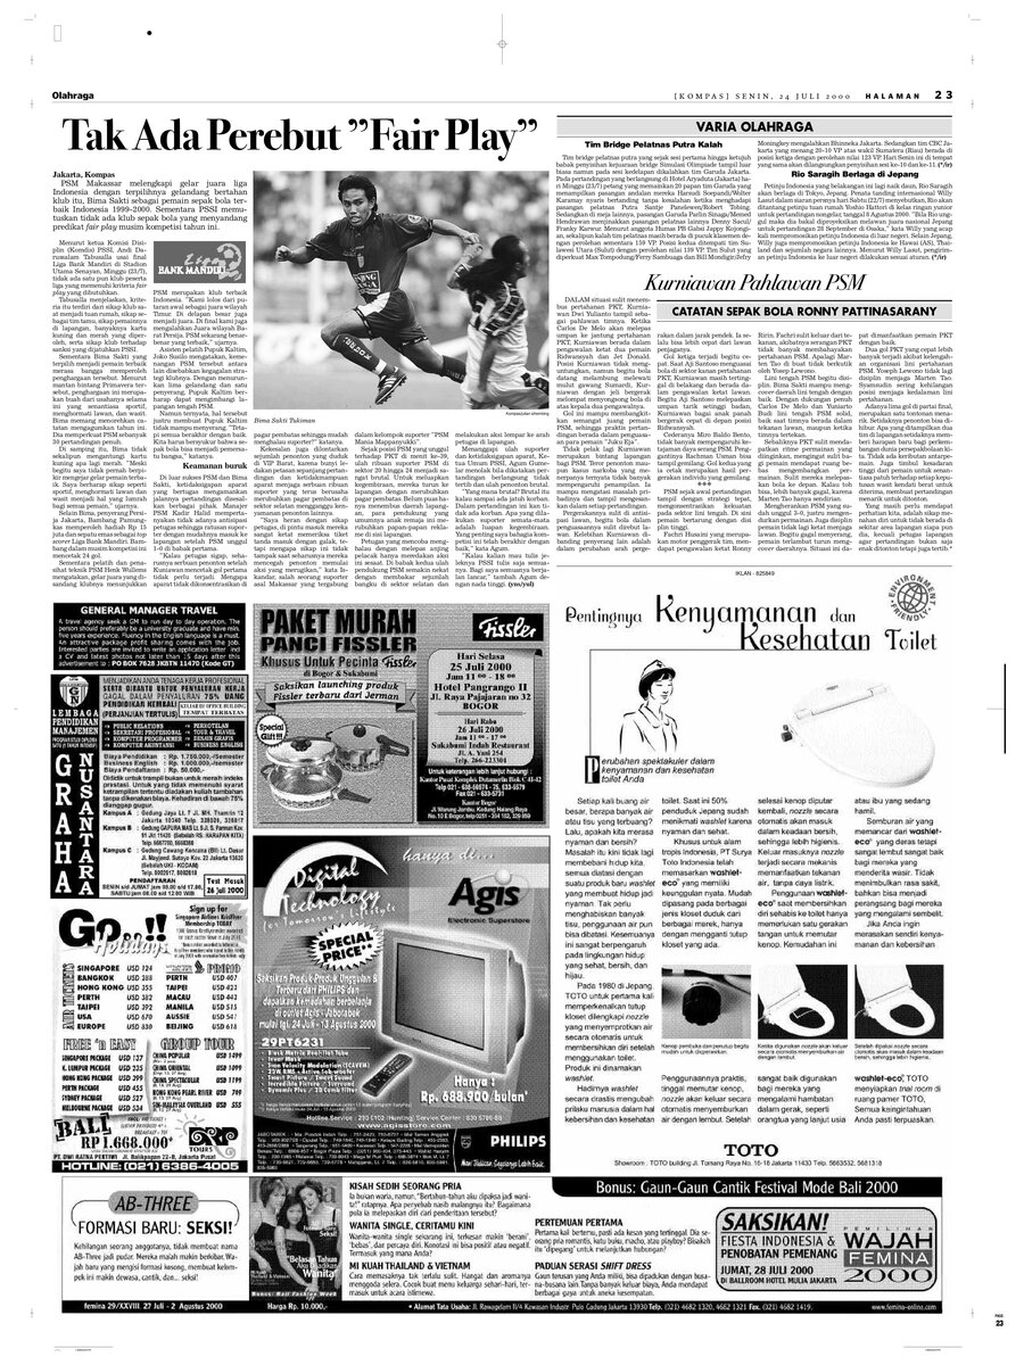 Halaman 24 "Kompas" edisi Senin, 24 Juli 2000, yang menampilkan berita tentang para penerima gelar individu di Liga Indonesia 1999-2000.